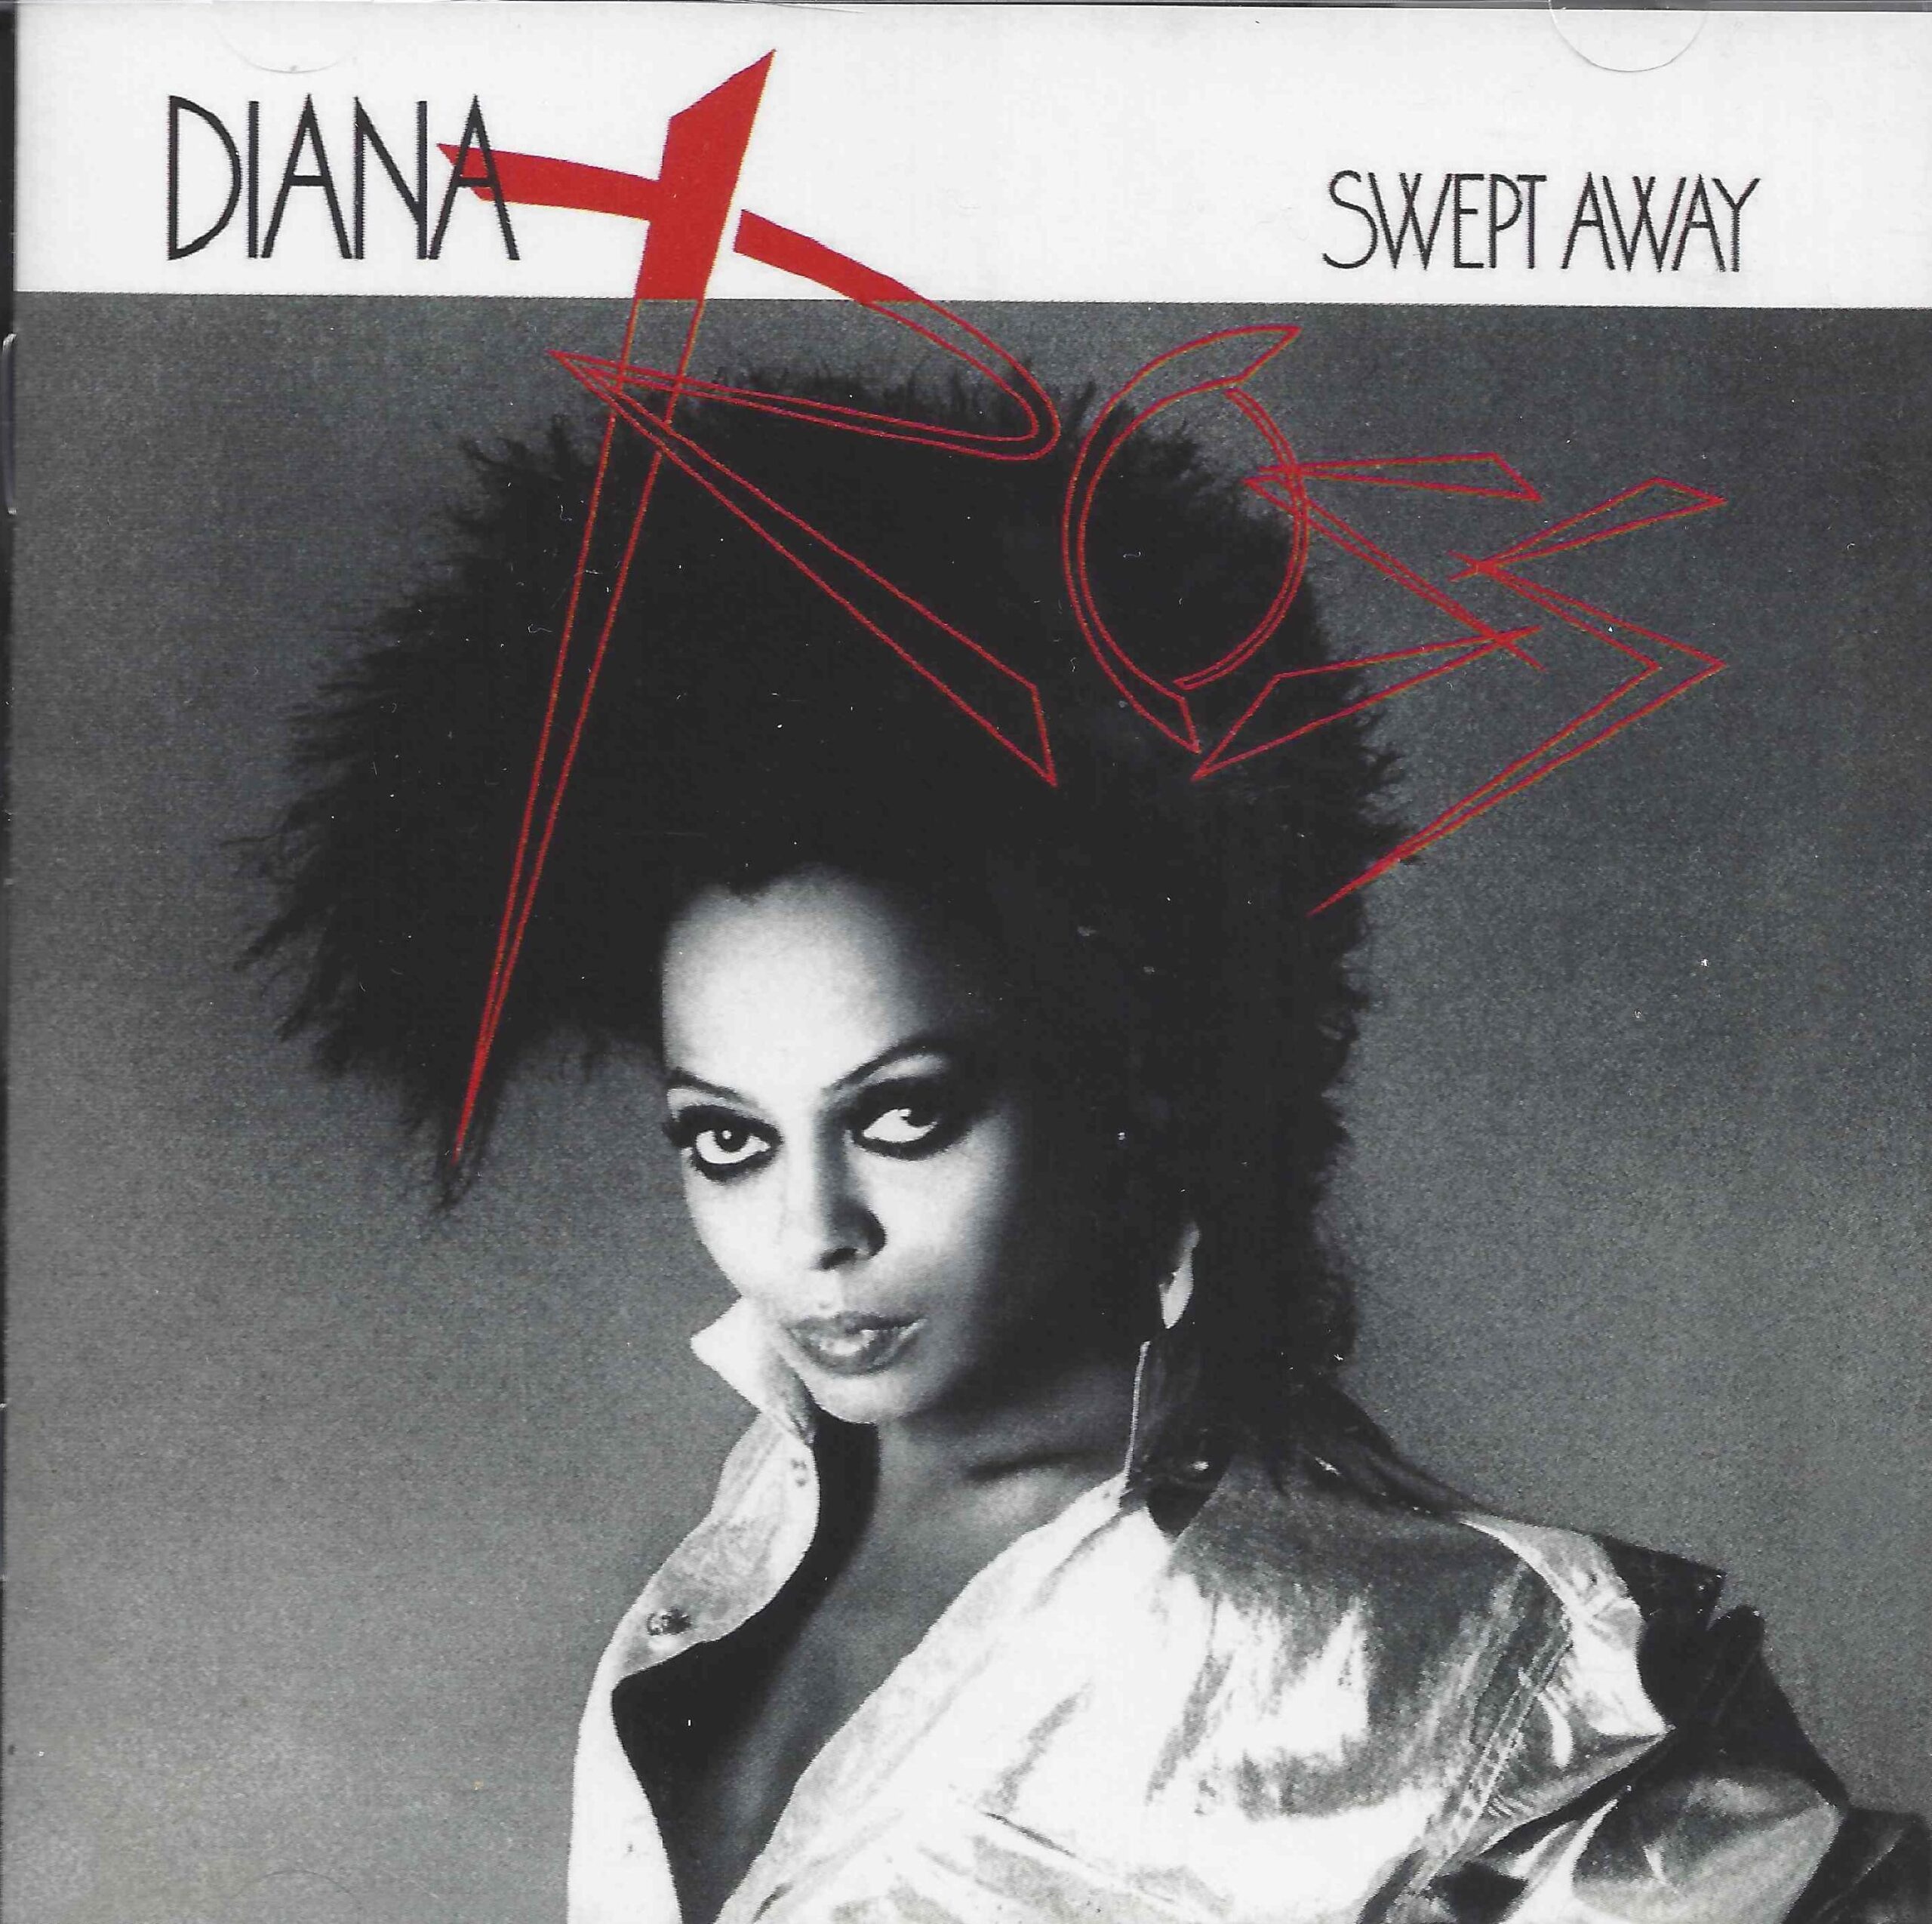 Diana Ross - Swept Away (2 CD Deluxe Edition) - Vinyl Masterpiece